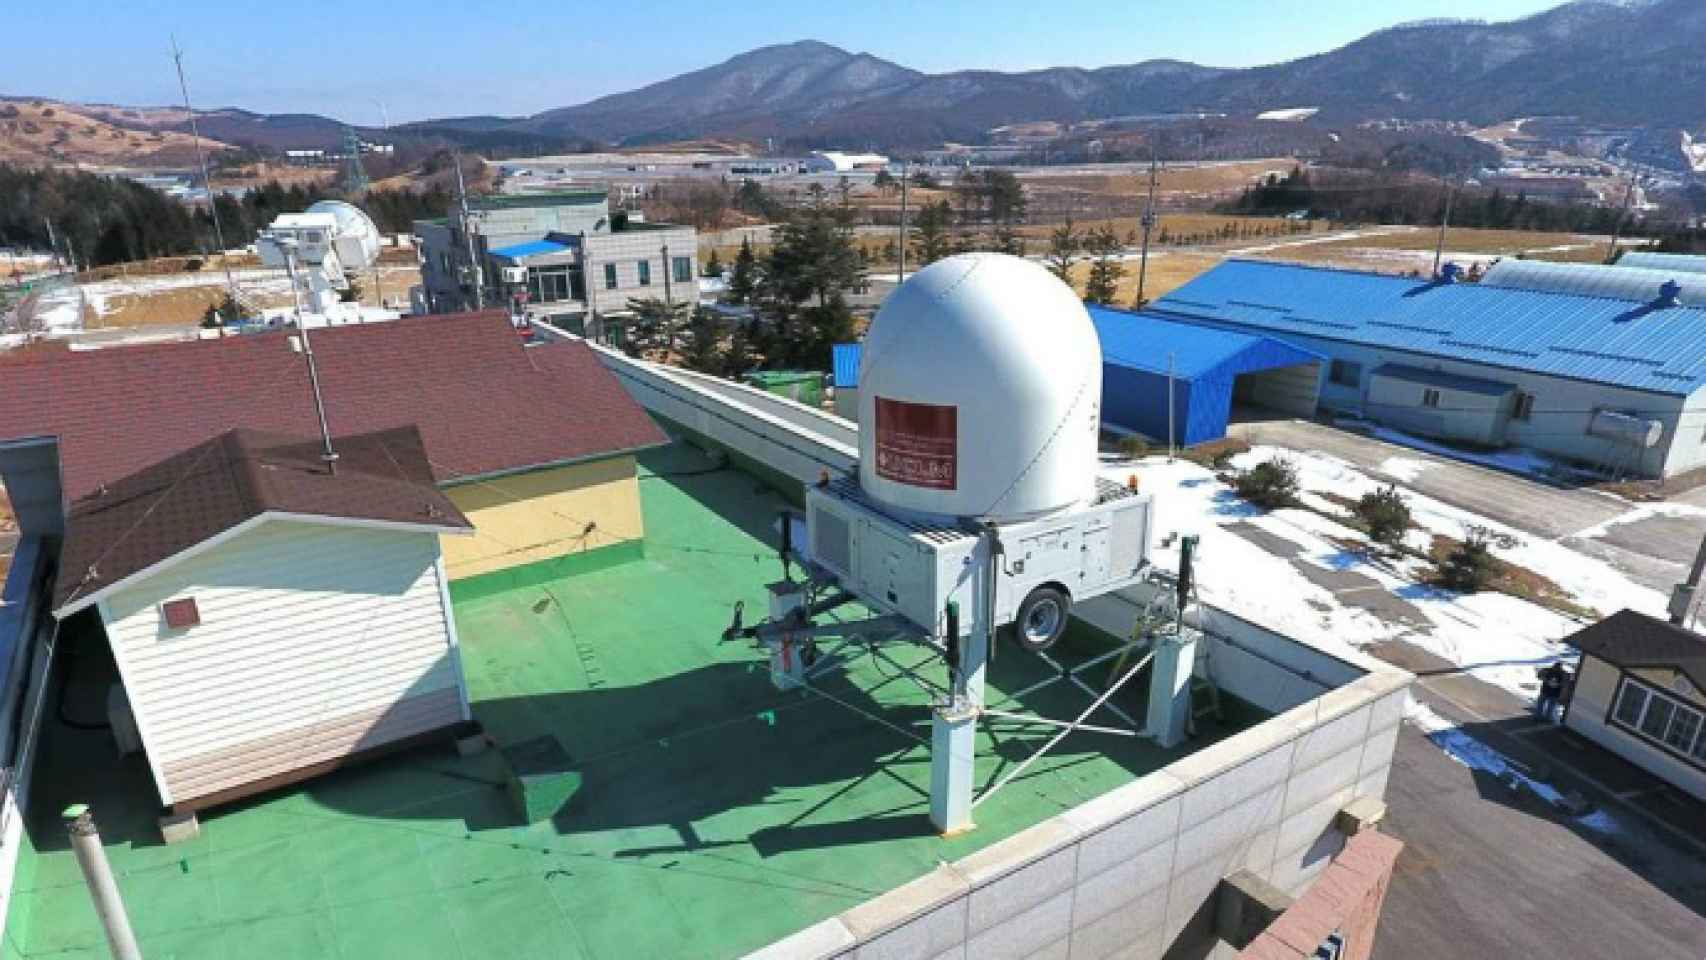 El radar de la UCLM en su emplazamiento en Corea, listo para medir la precipitación